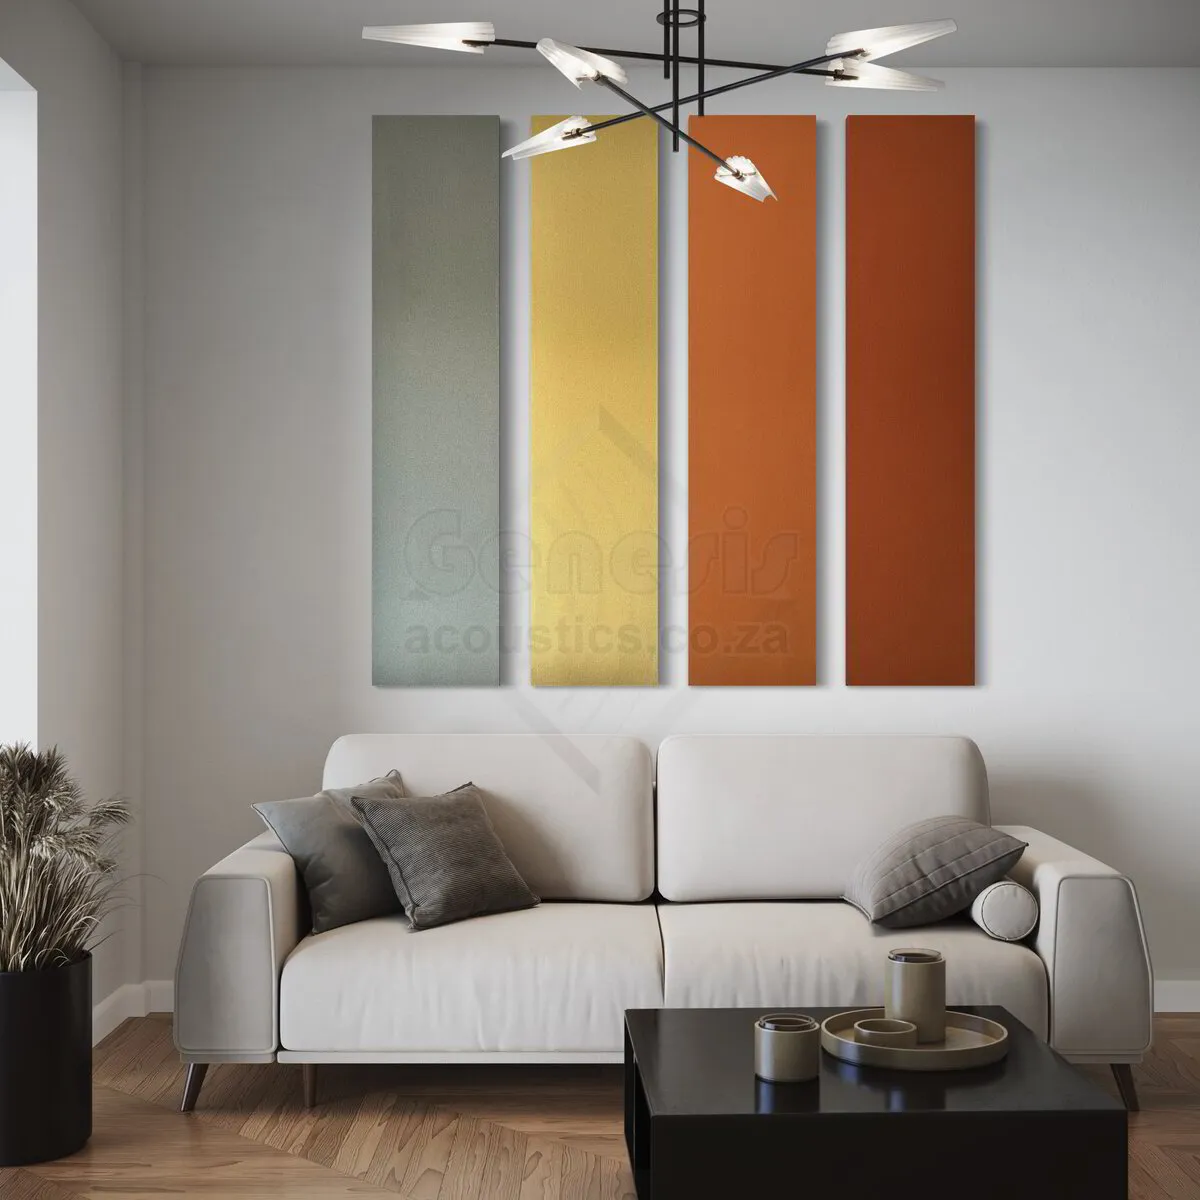 S5 Pro Acoustic Wall Panels - 180cm x 40cm Set of 4 - Sunset Colour Combo